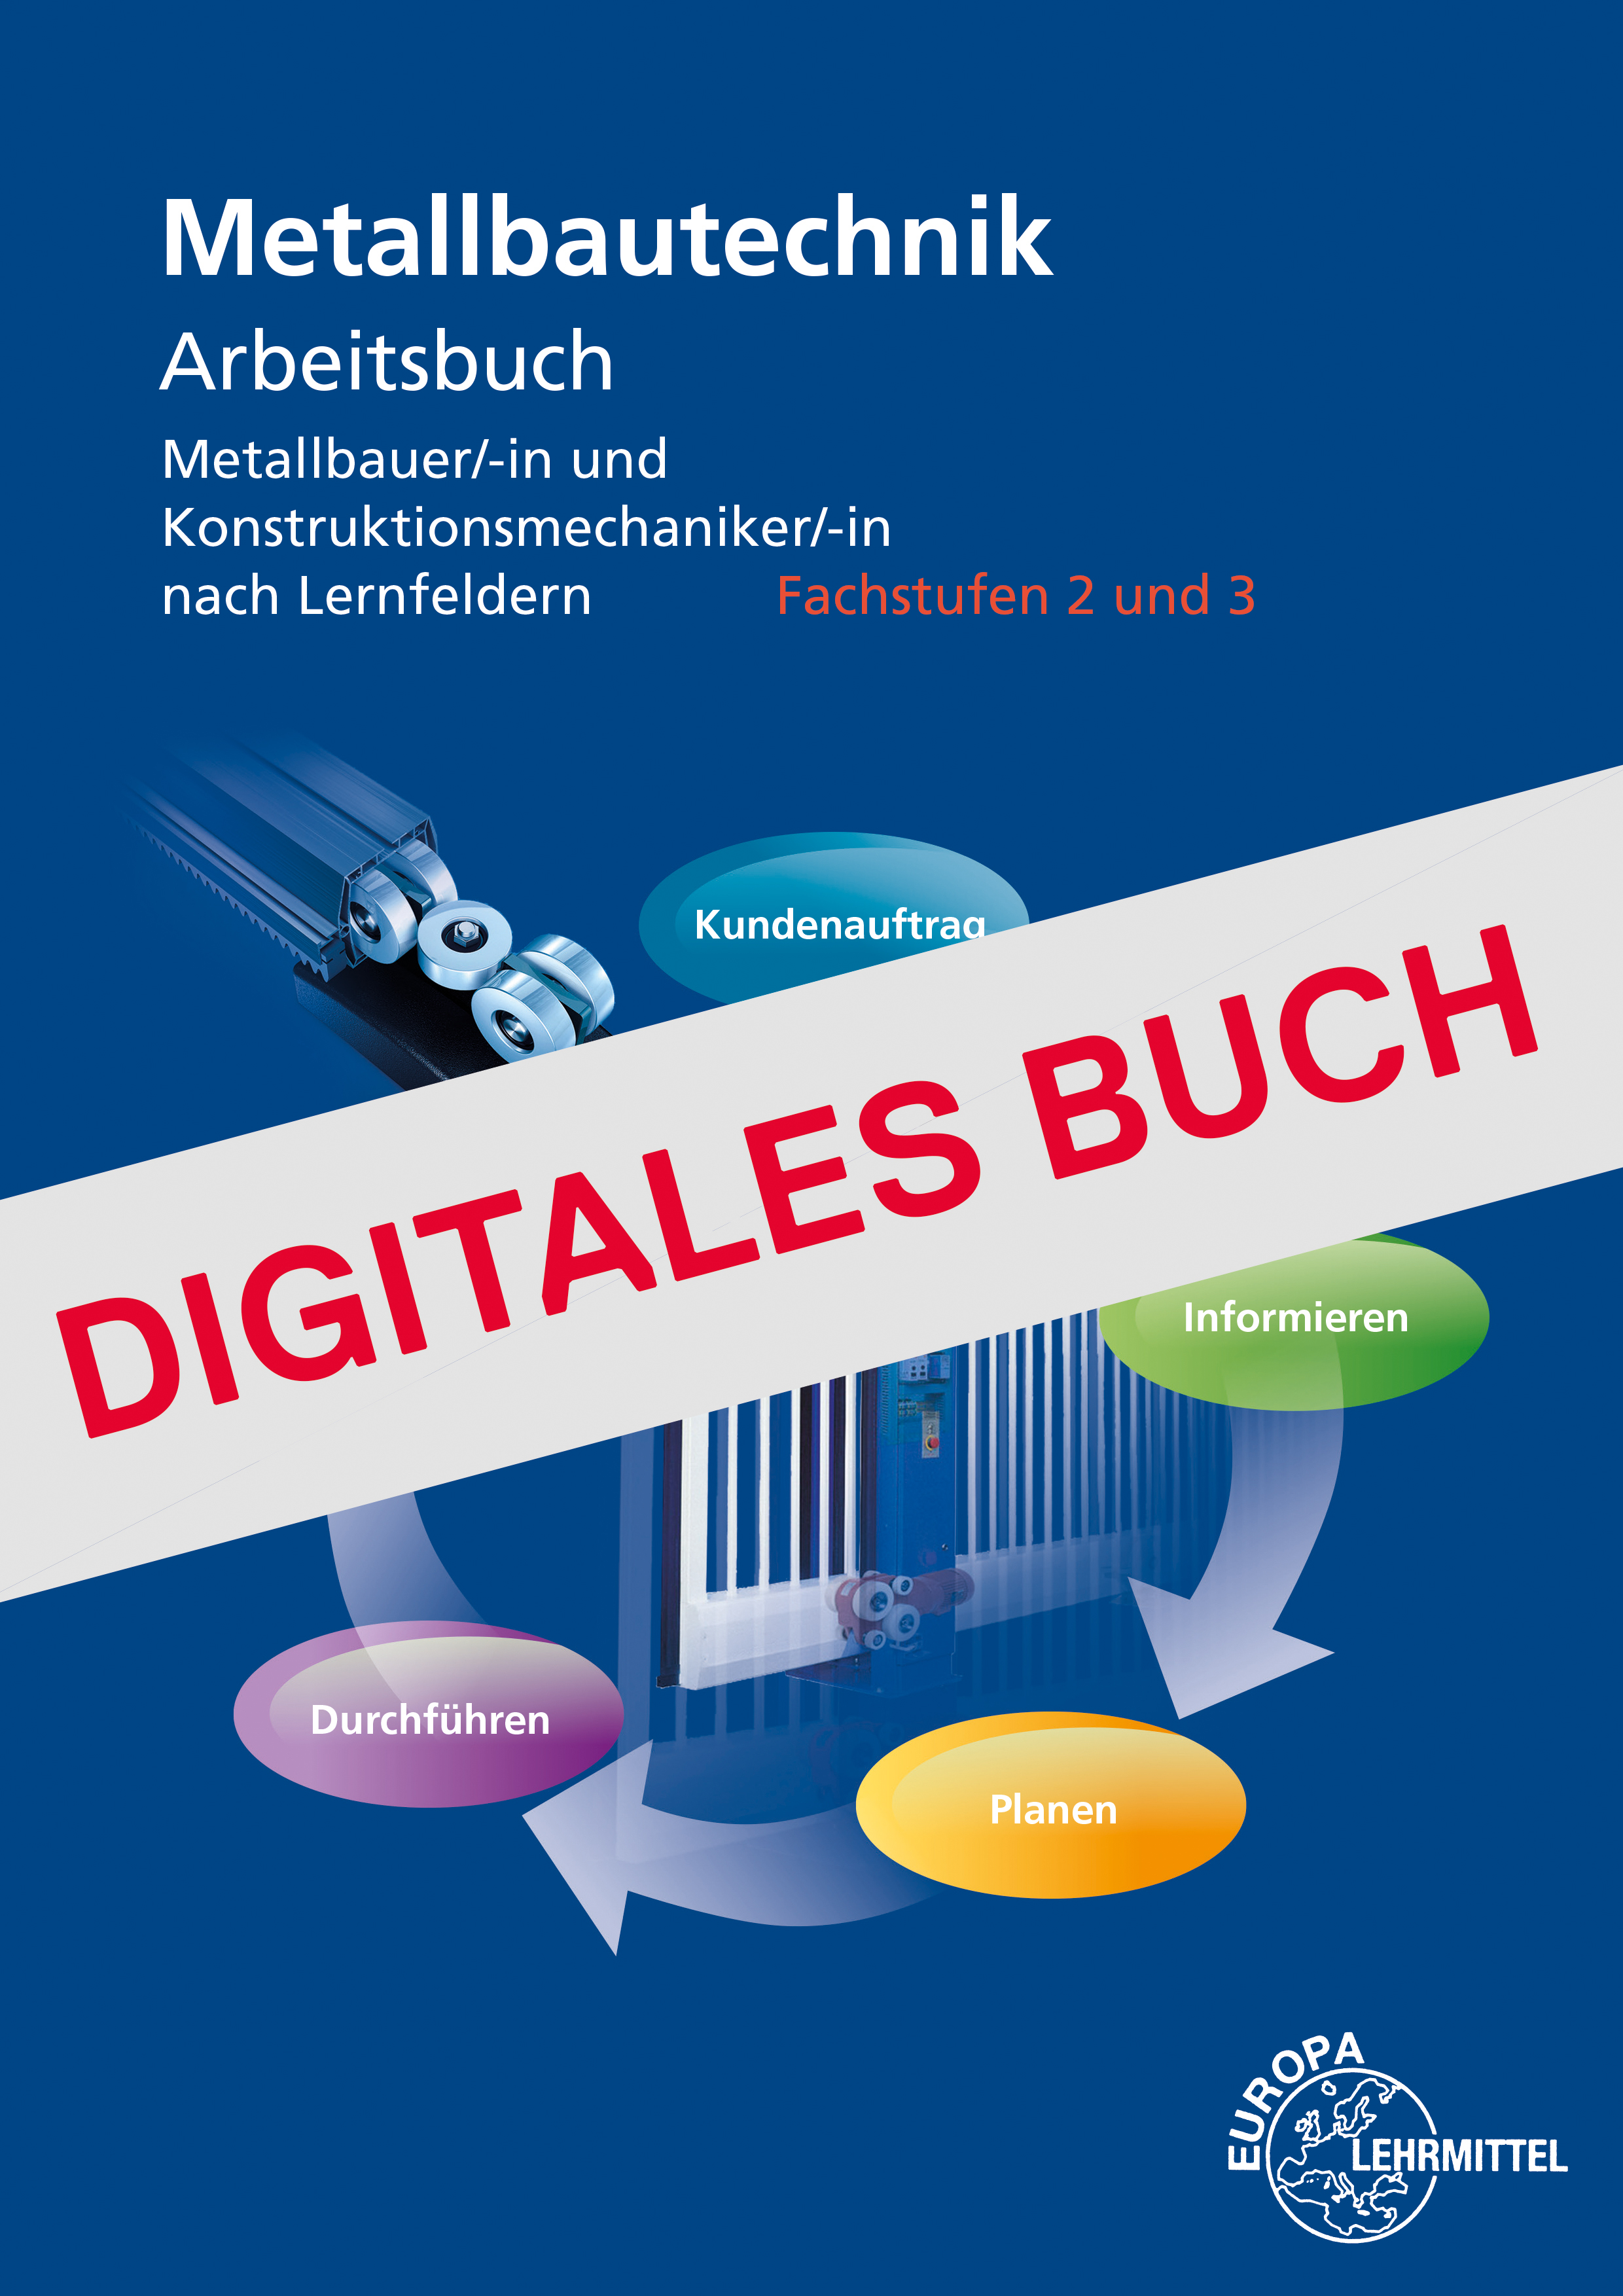 Arbeitsbuch Metallbautechnik Fachstufen 2 und 3 - Digitales Buch